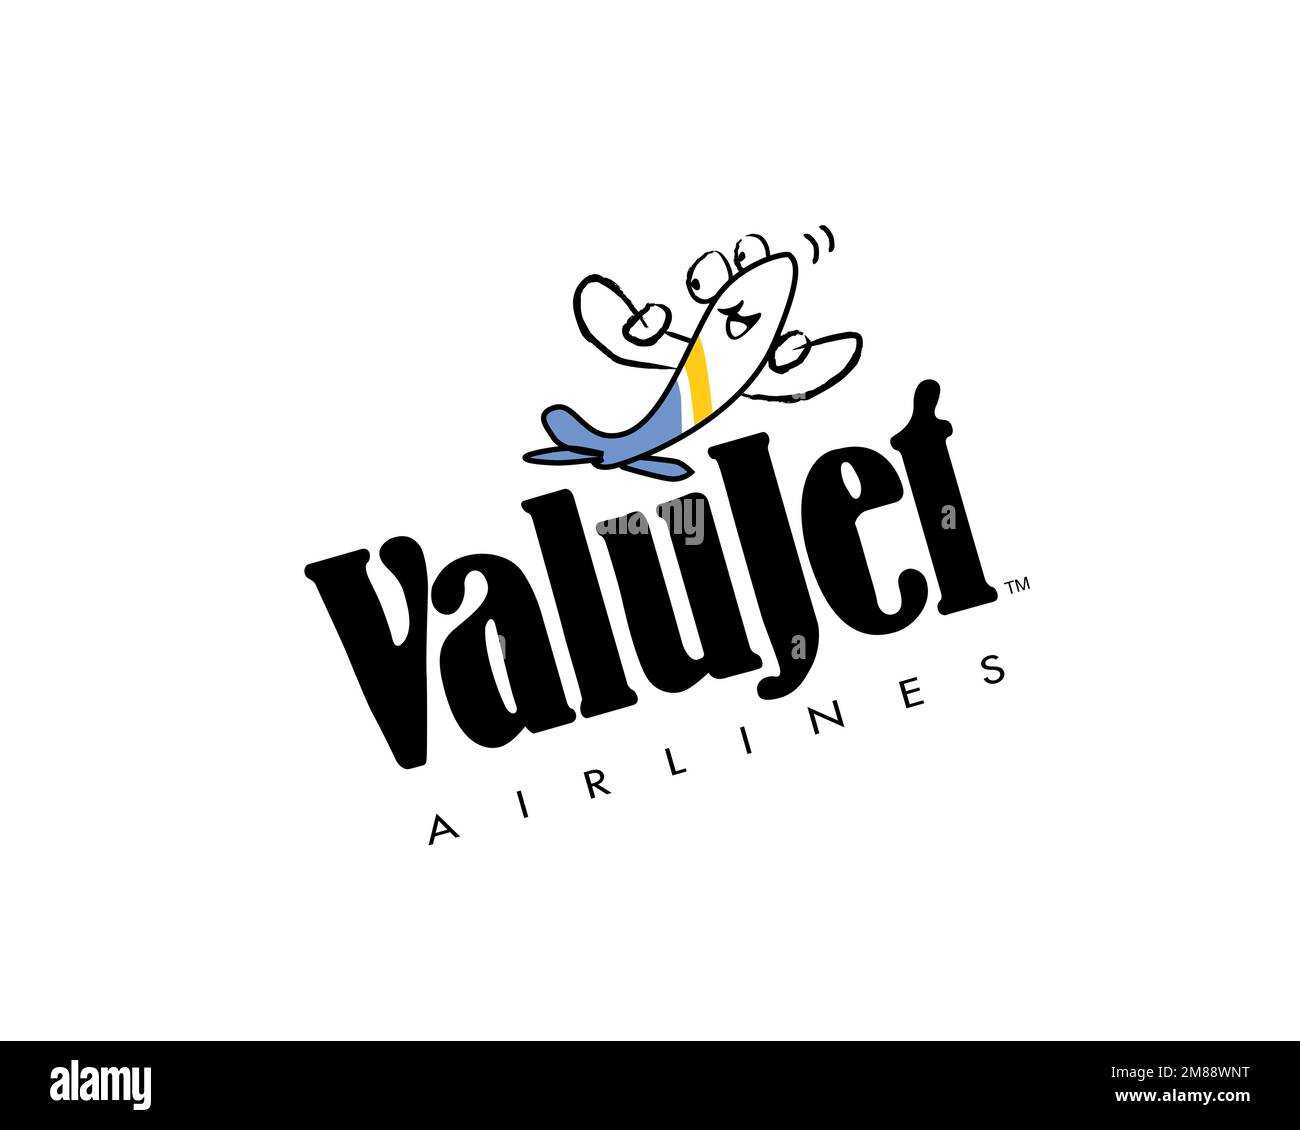 Valujet Airline, logo pivoté, arrière-plan blanc Banque D'Images